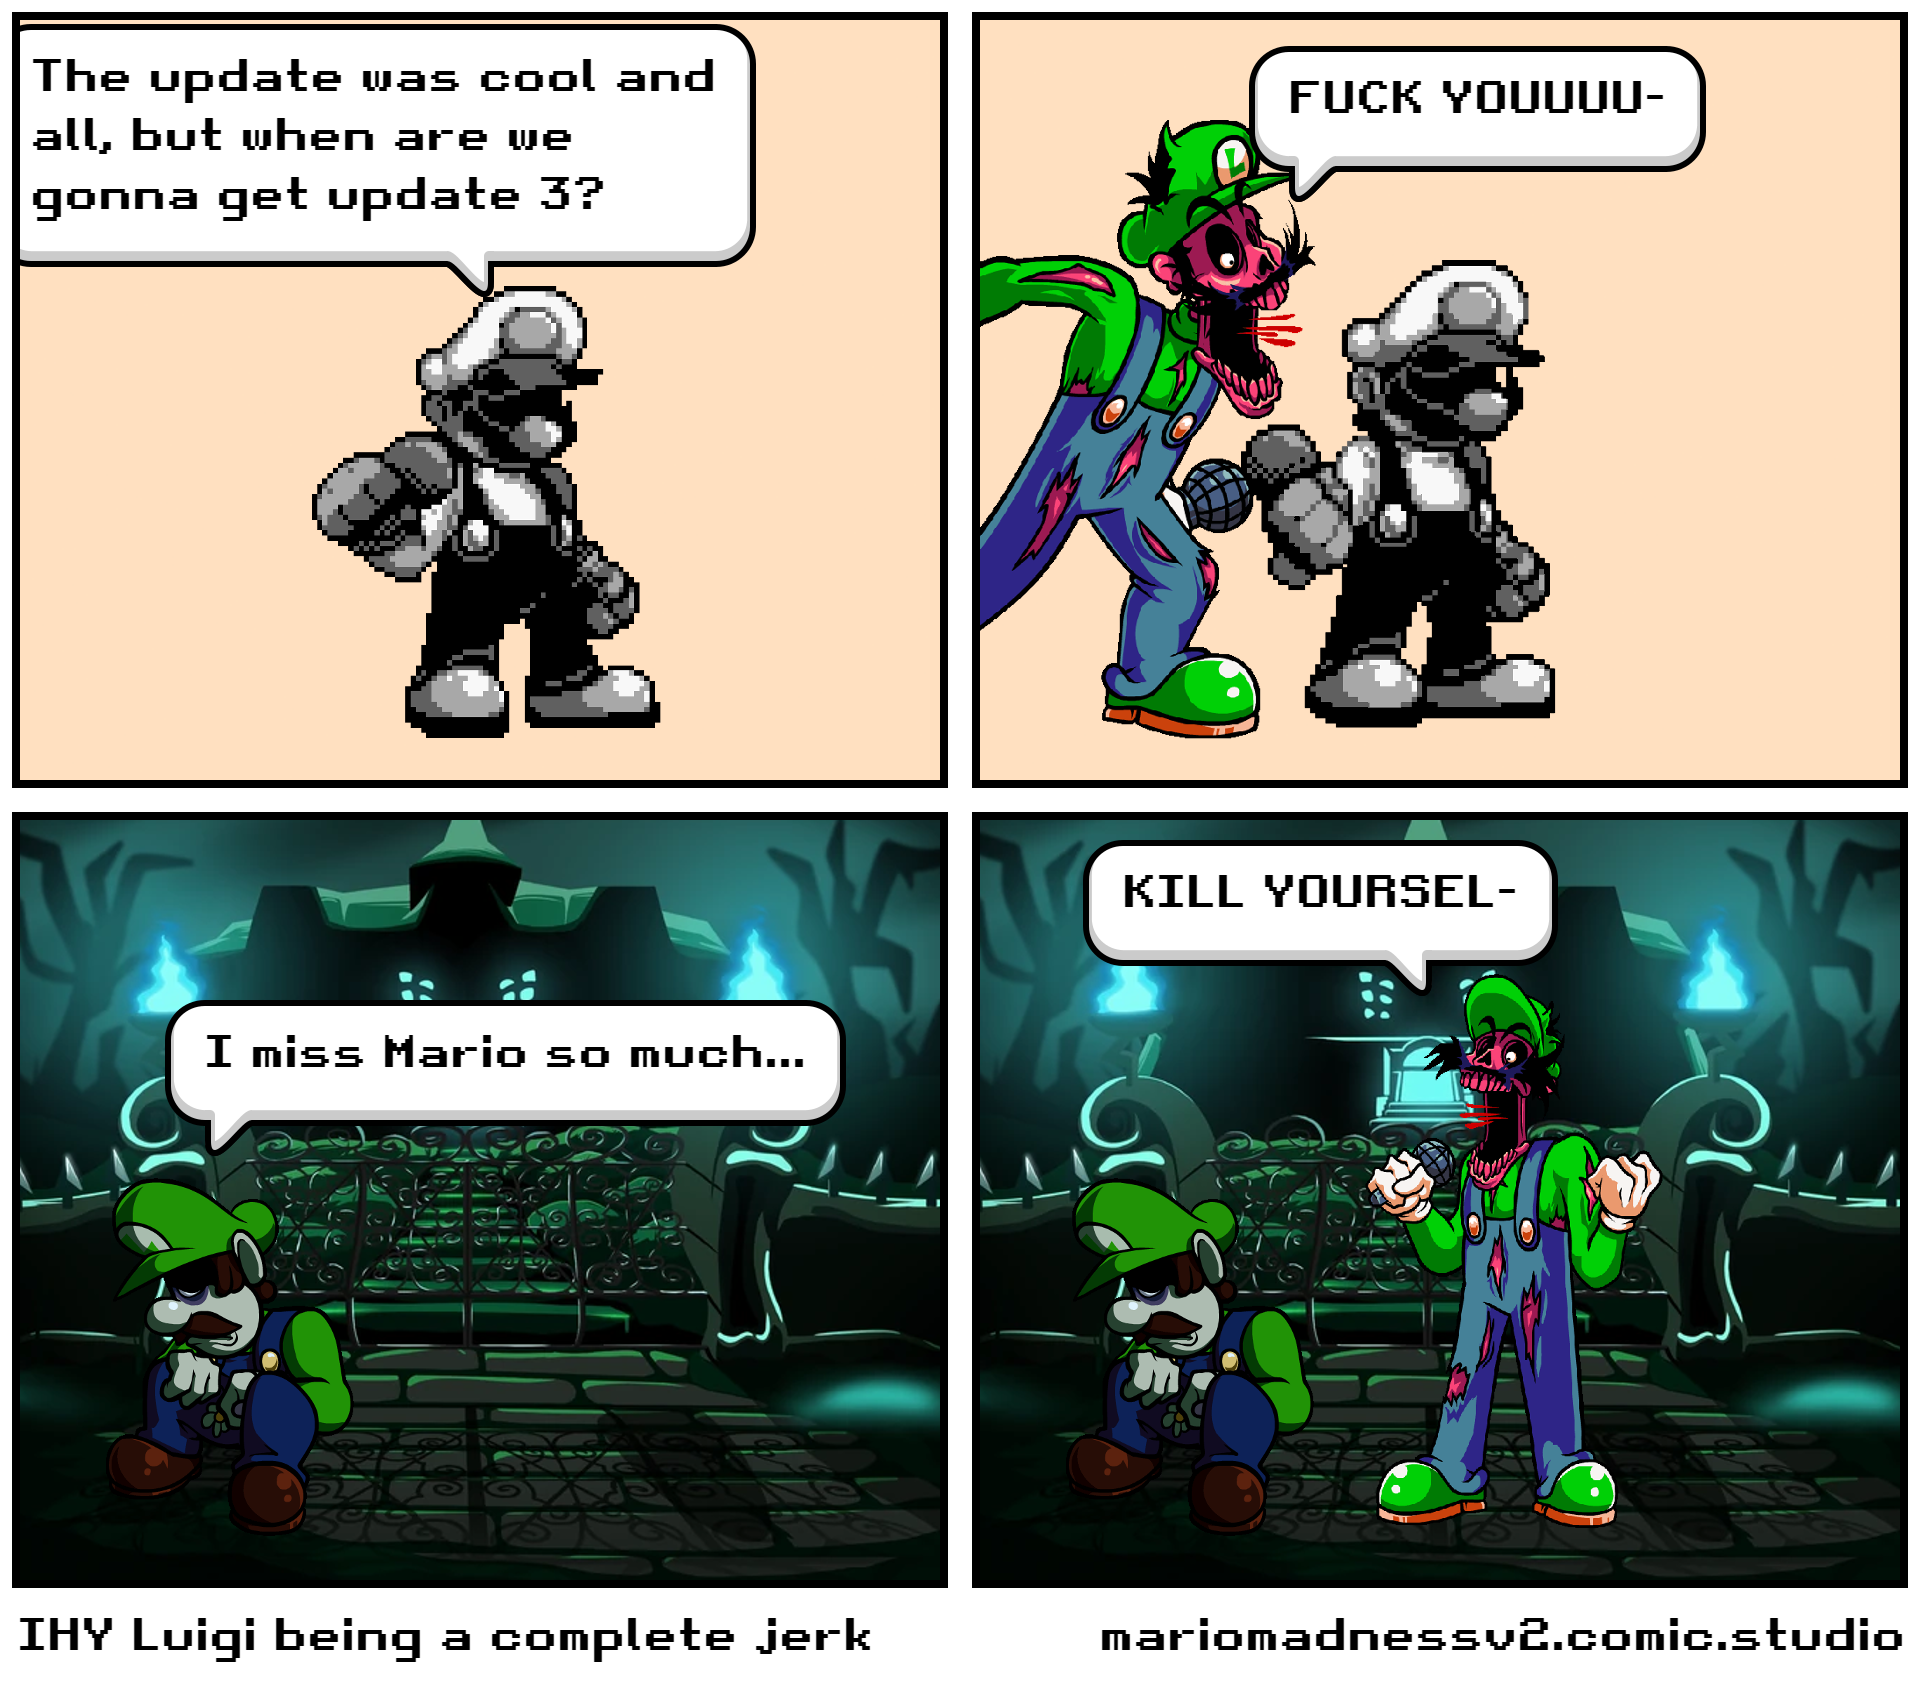 IHY Luigi being a complete jerk